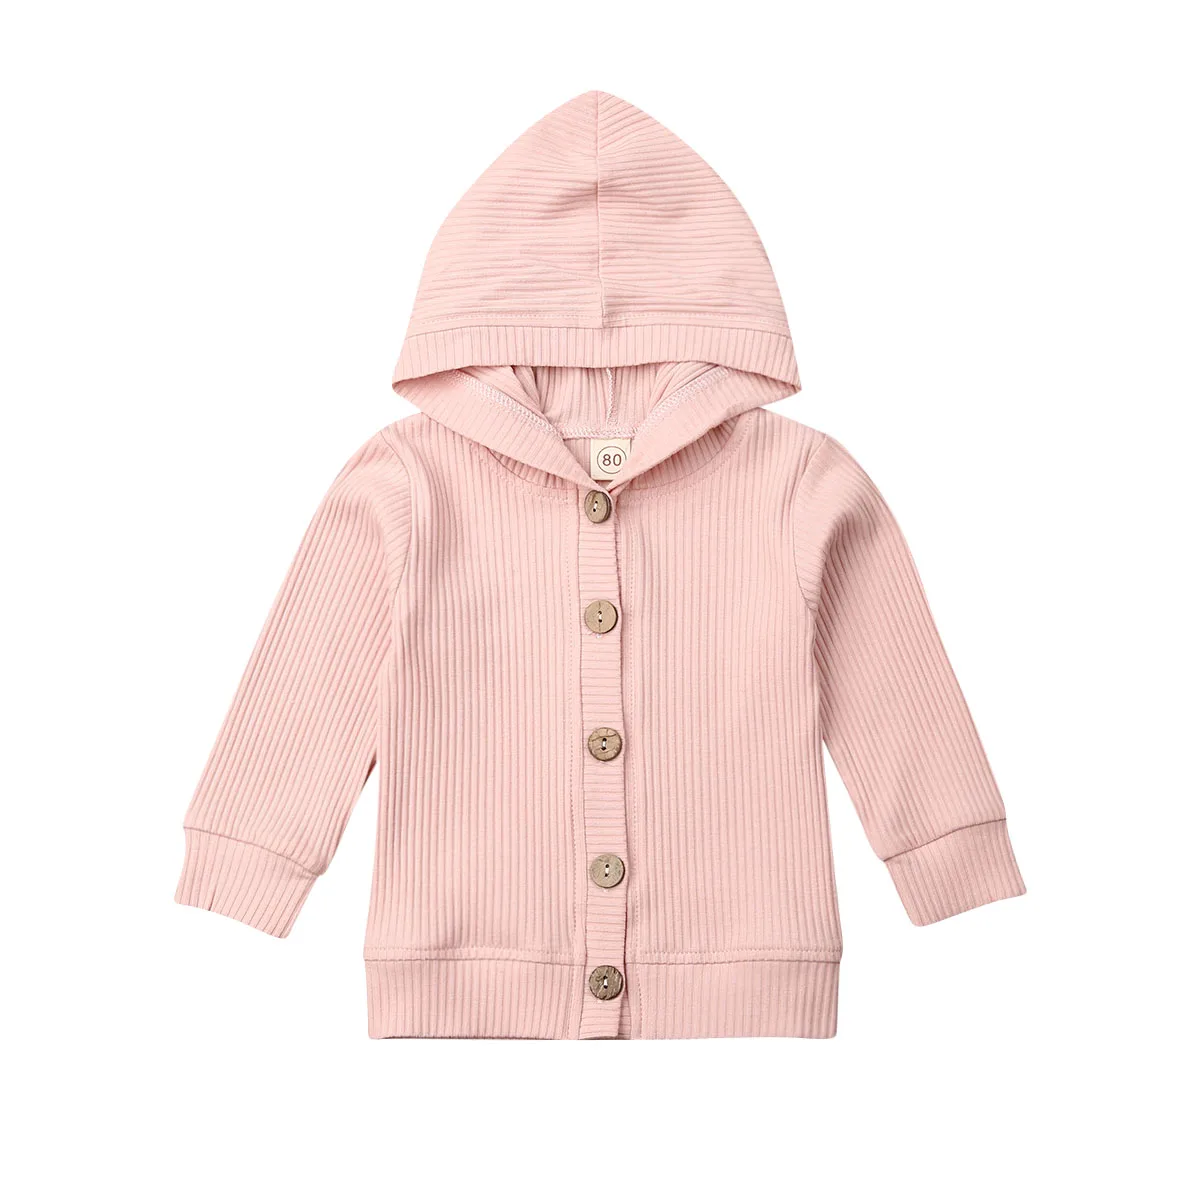 Новая осенне-зимняя одежда для новорожденных и маленьких девочек 0-24 мес., куртки, толстовка с пуговицами, пальто, вязаная куртка в рубчик, пальто для девочек, верхняя одежда - Цвет: Розовый